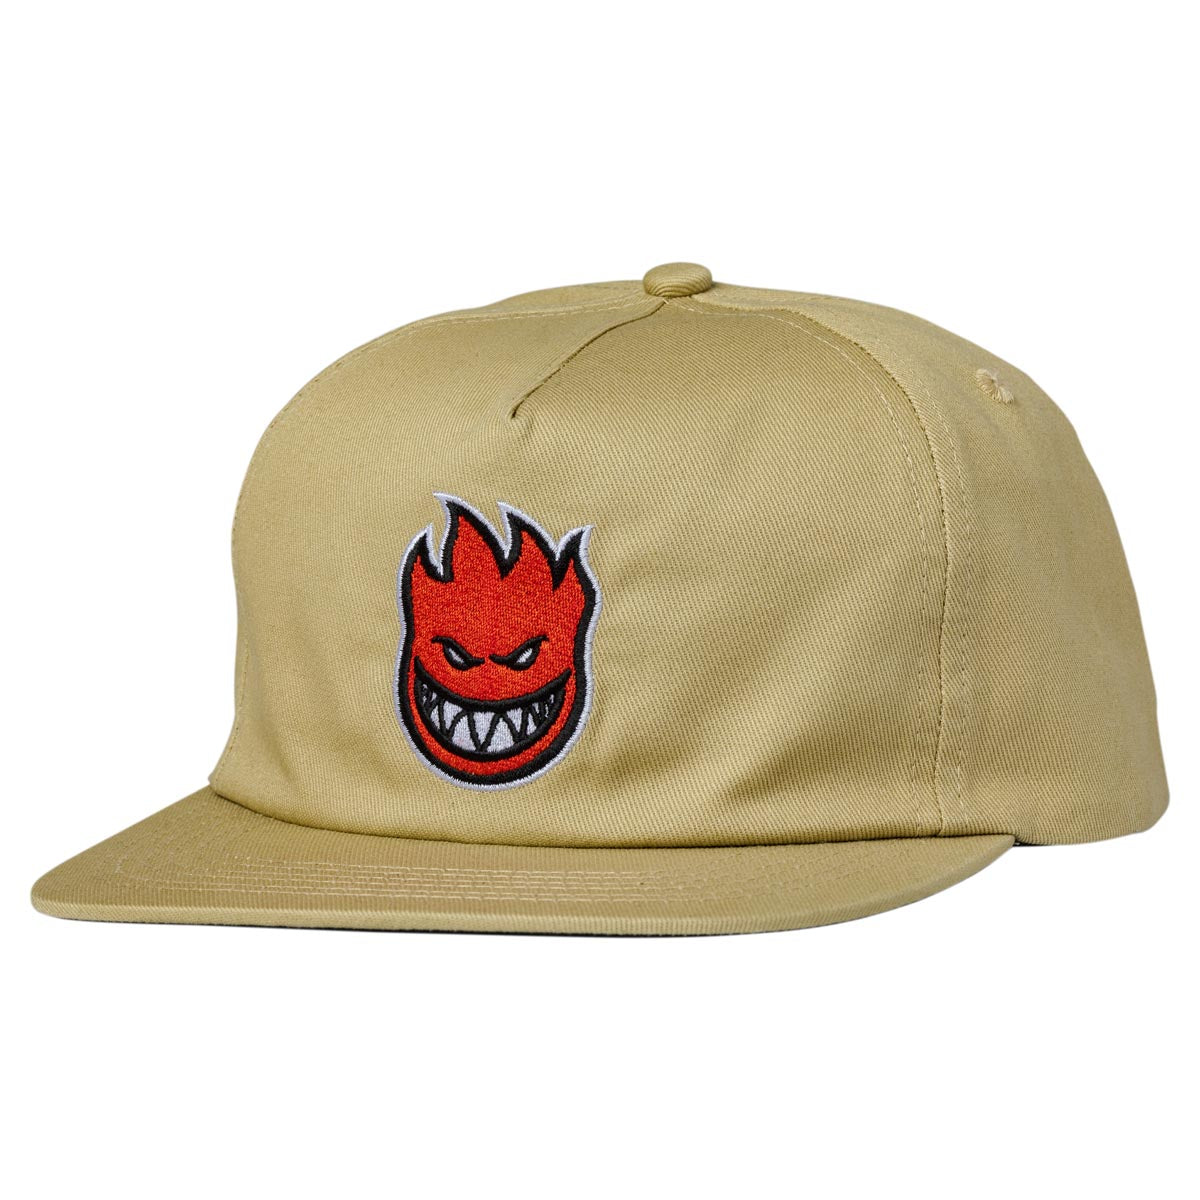 Spitfire Lil Bighead Fill Adjustable Snapback Hat (Tan/Red) - Apple Valley Emporium